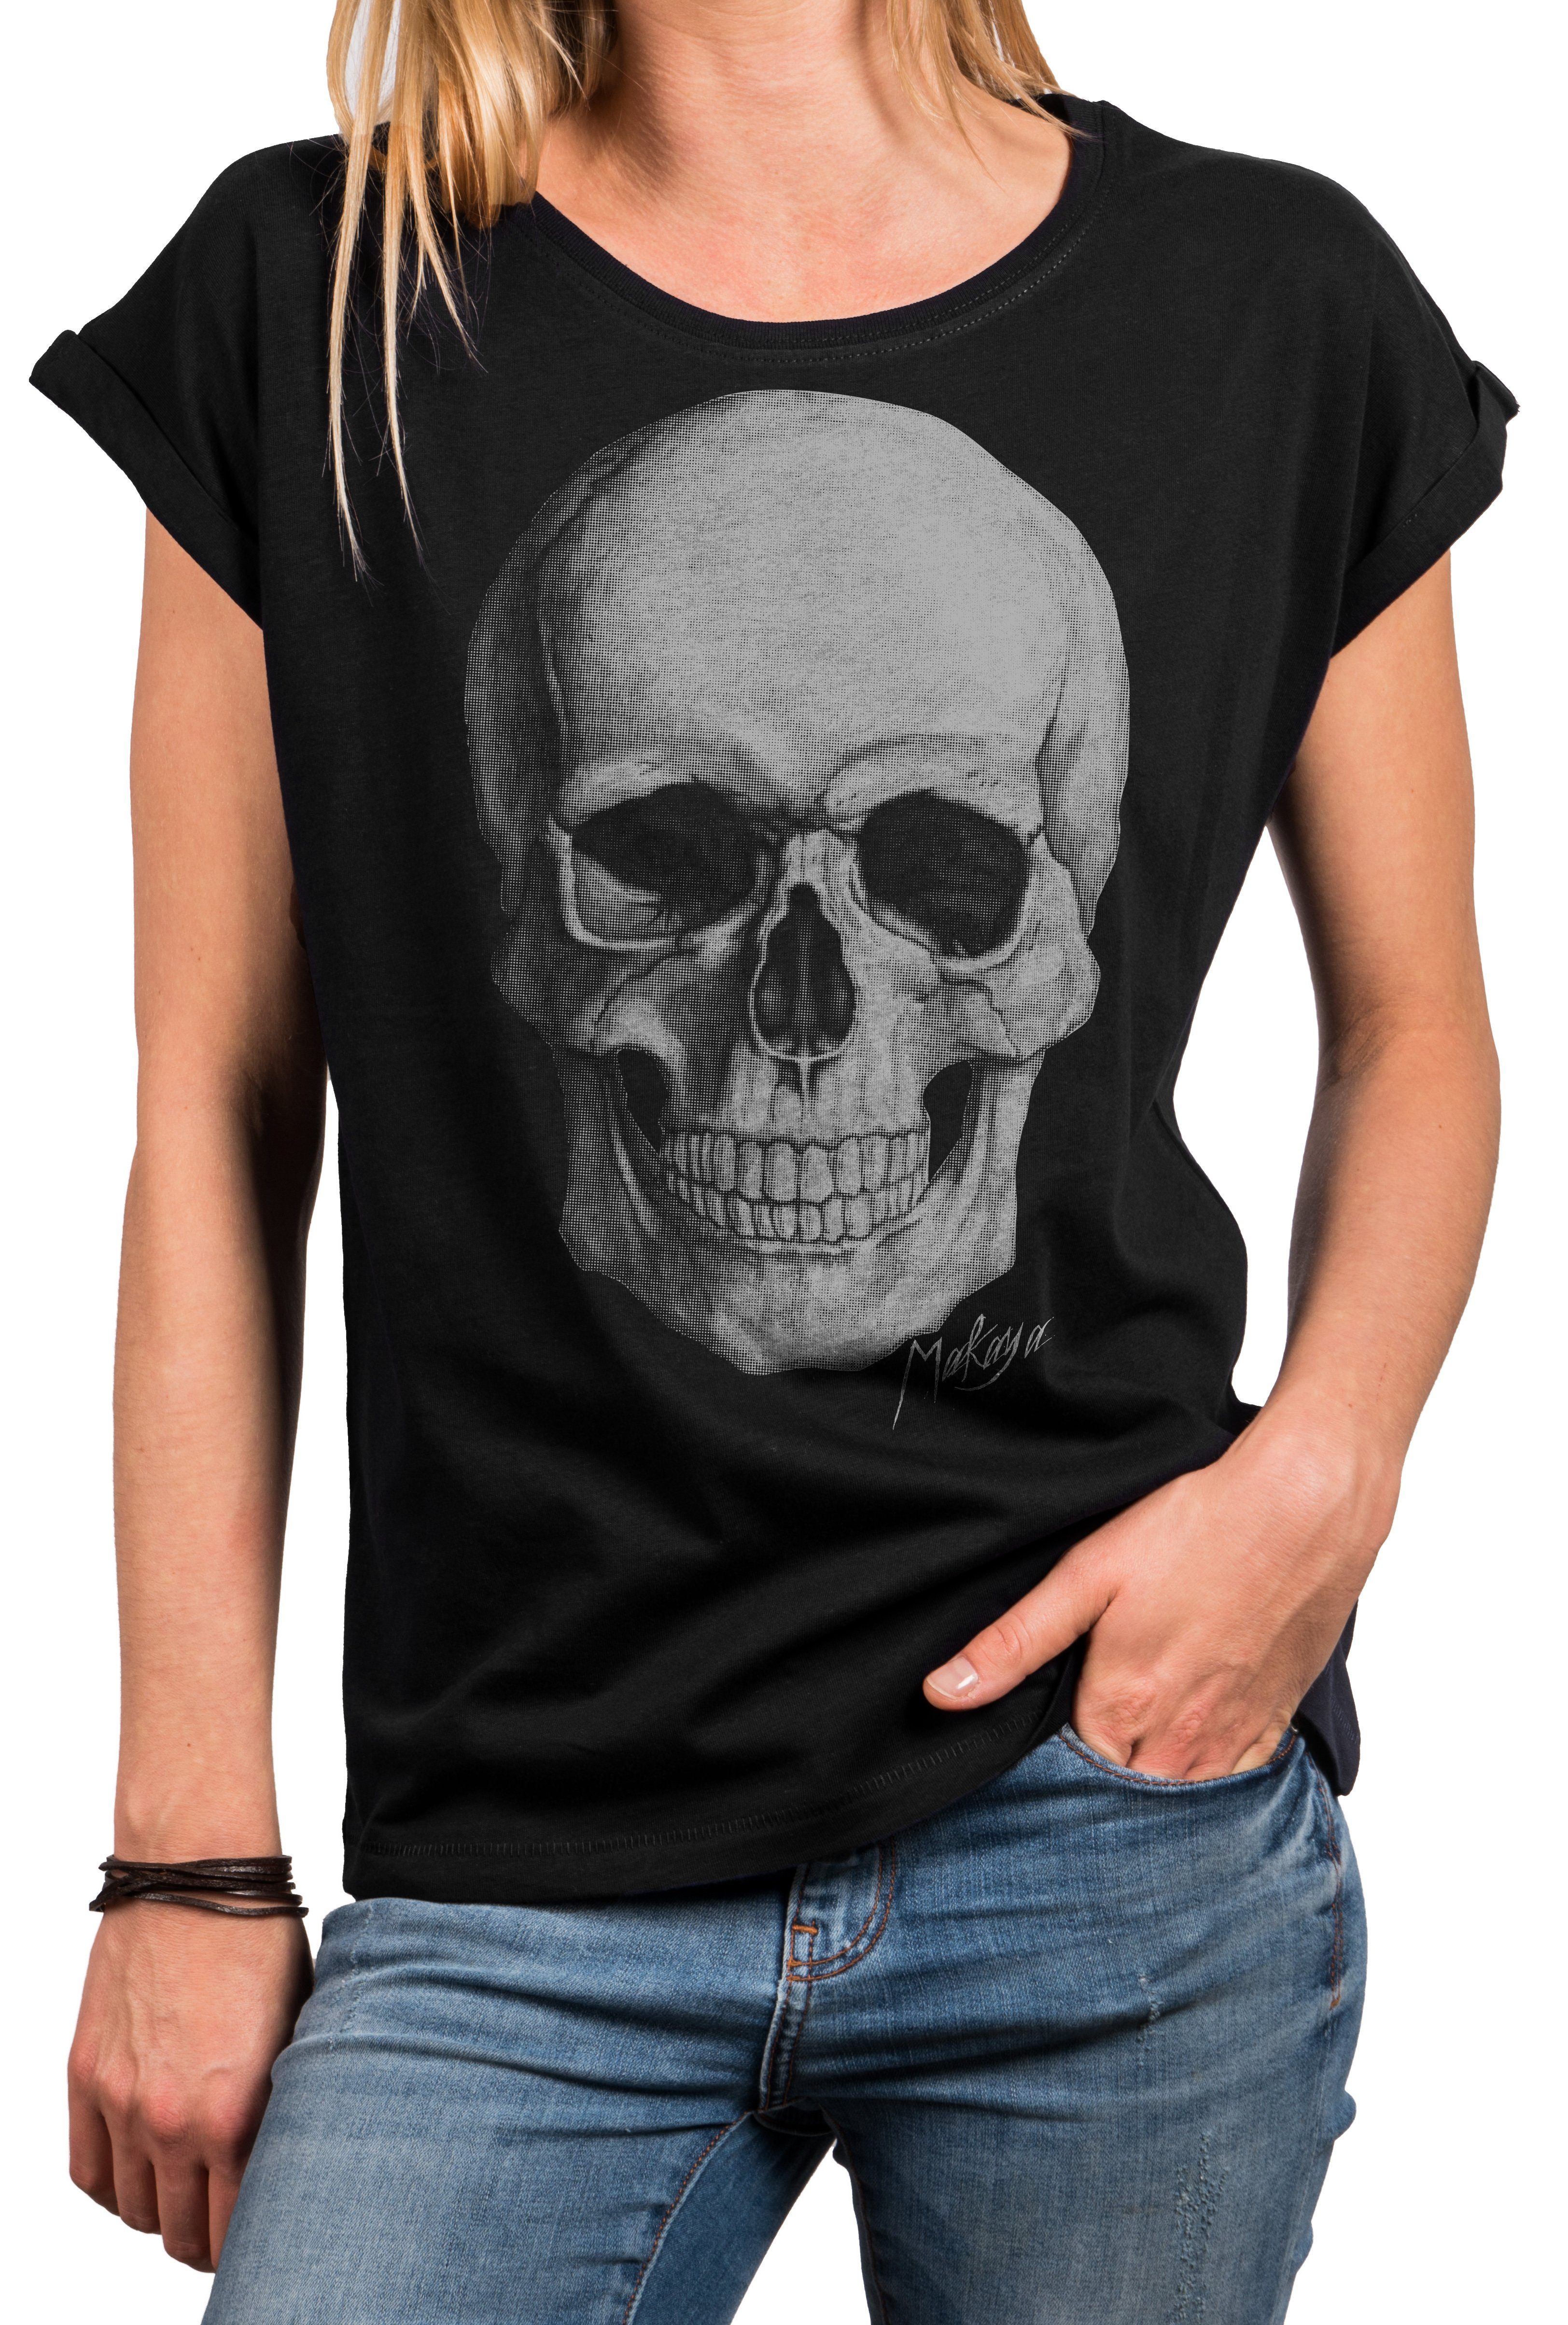 lässig Rock Oversize - Print-Shirt blau, MAKAYA schwarz, Shirt locker große grau) Damen Größen Skull (elegant, Sexy Tunika Sommer für